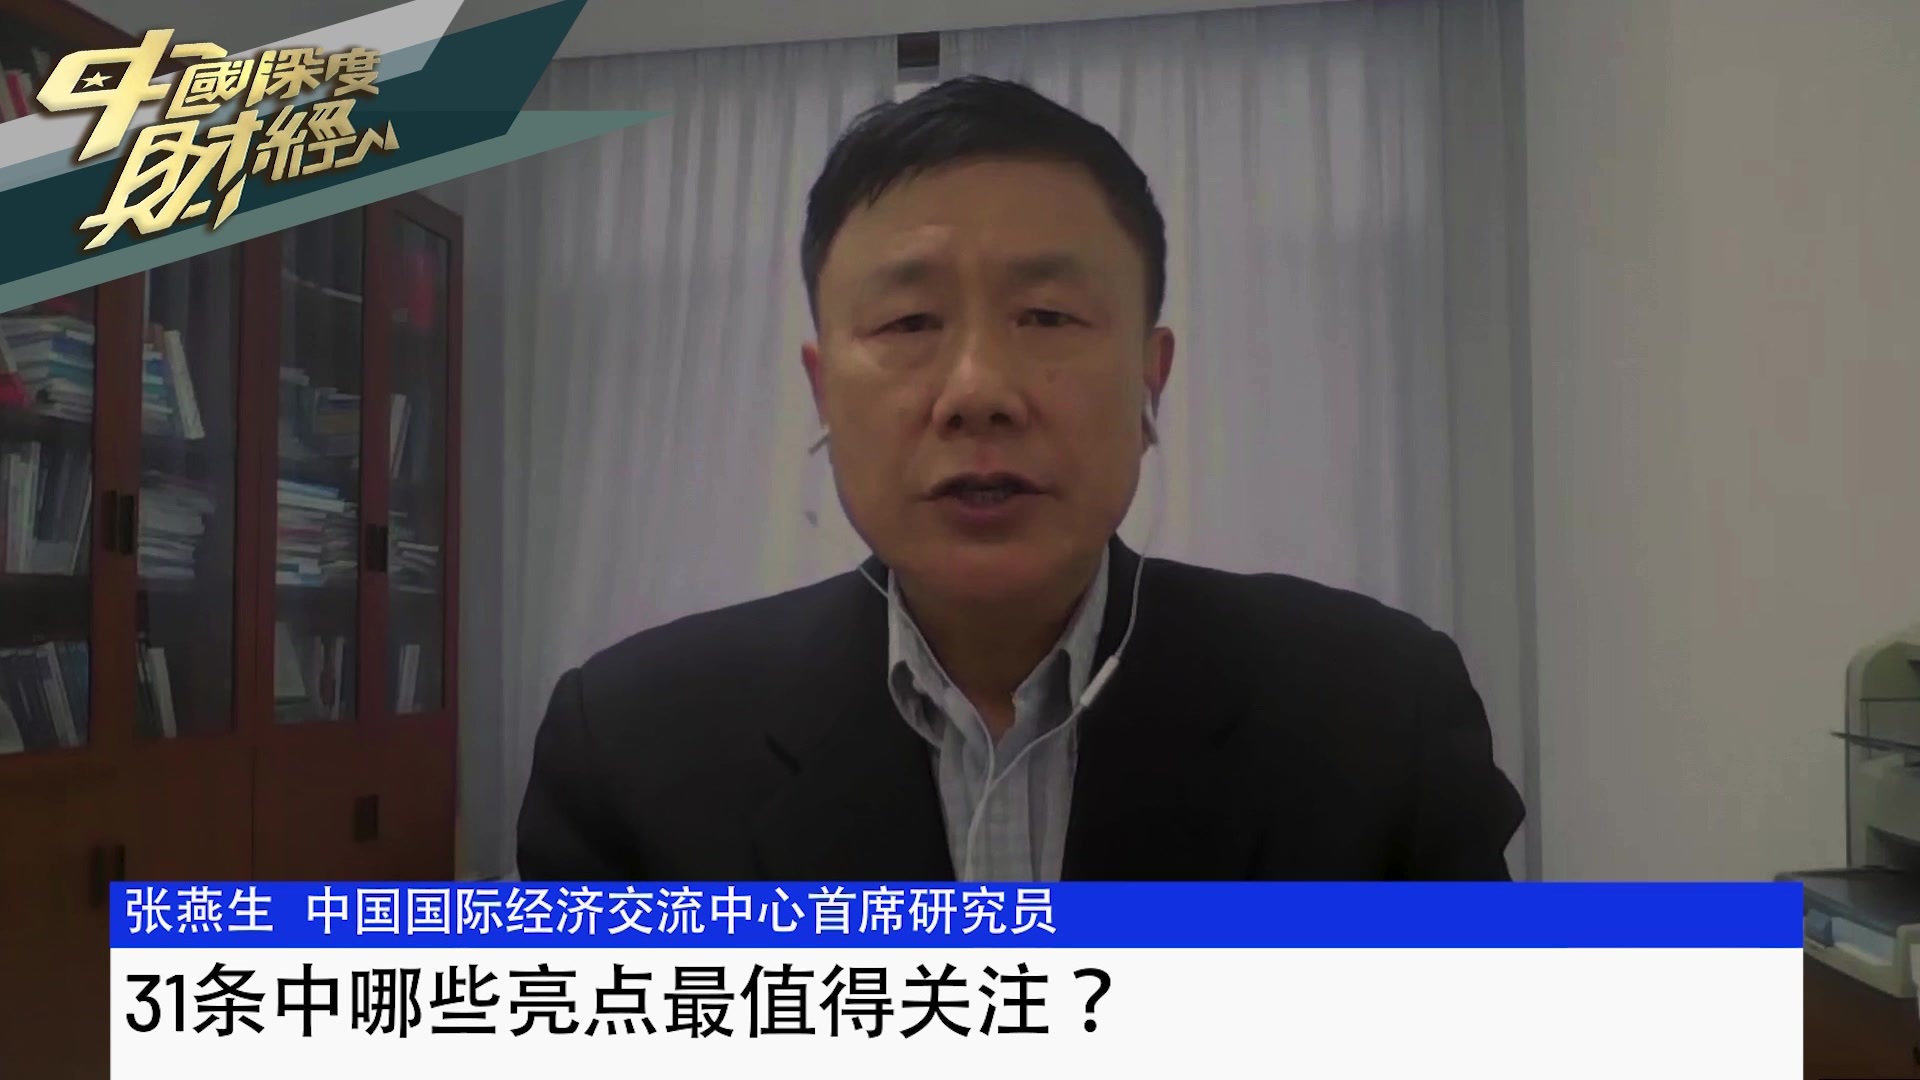 中国国际经济交流中心首席研究员张燕生：31条中哪些亮点最值得关注？